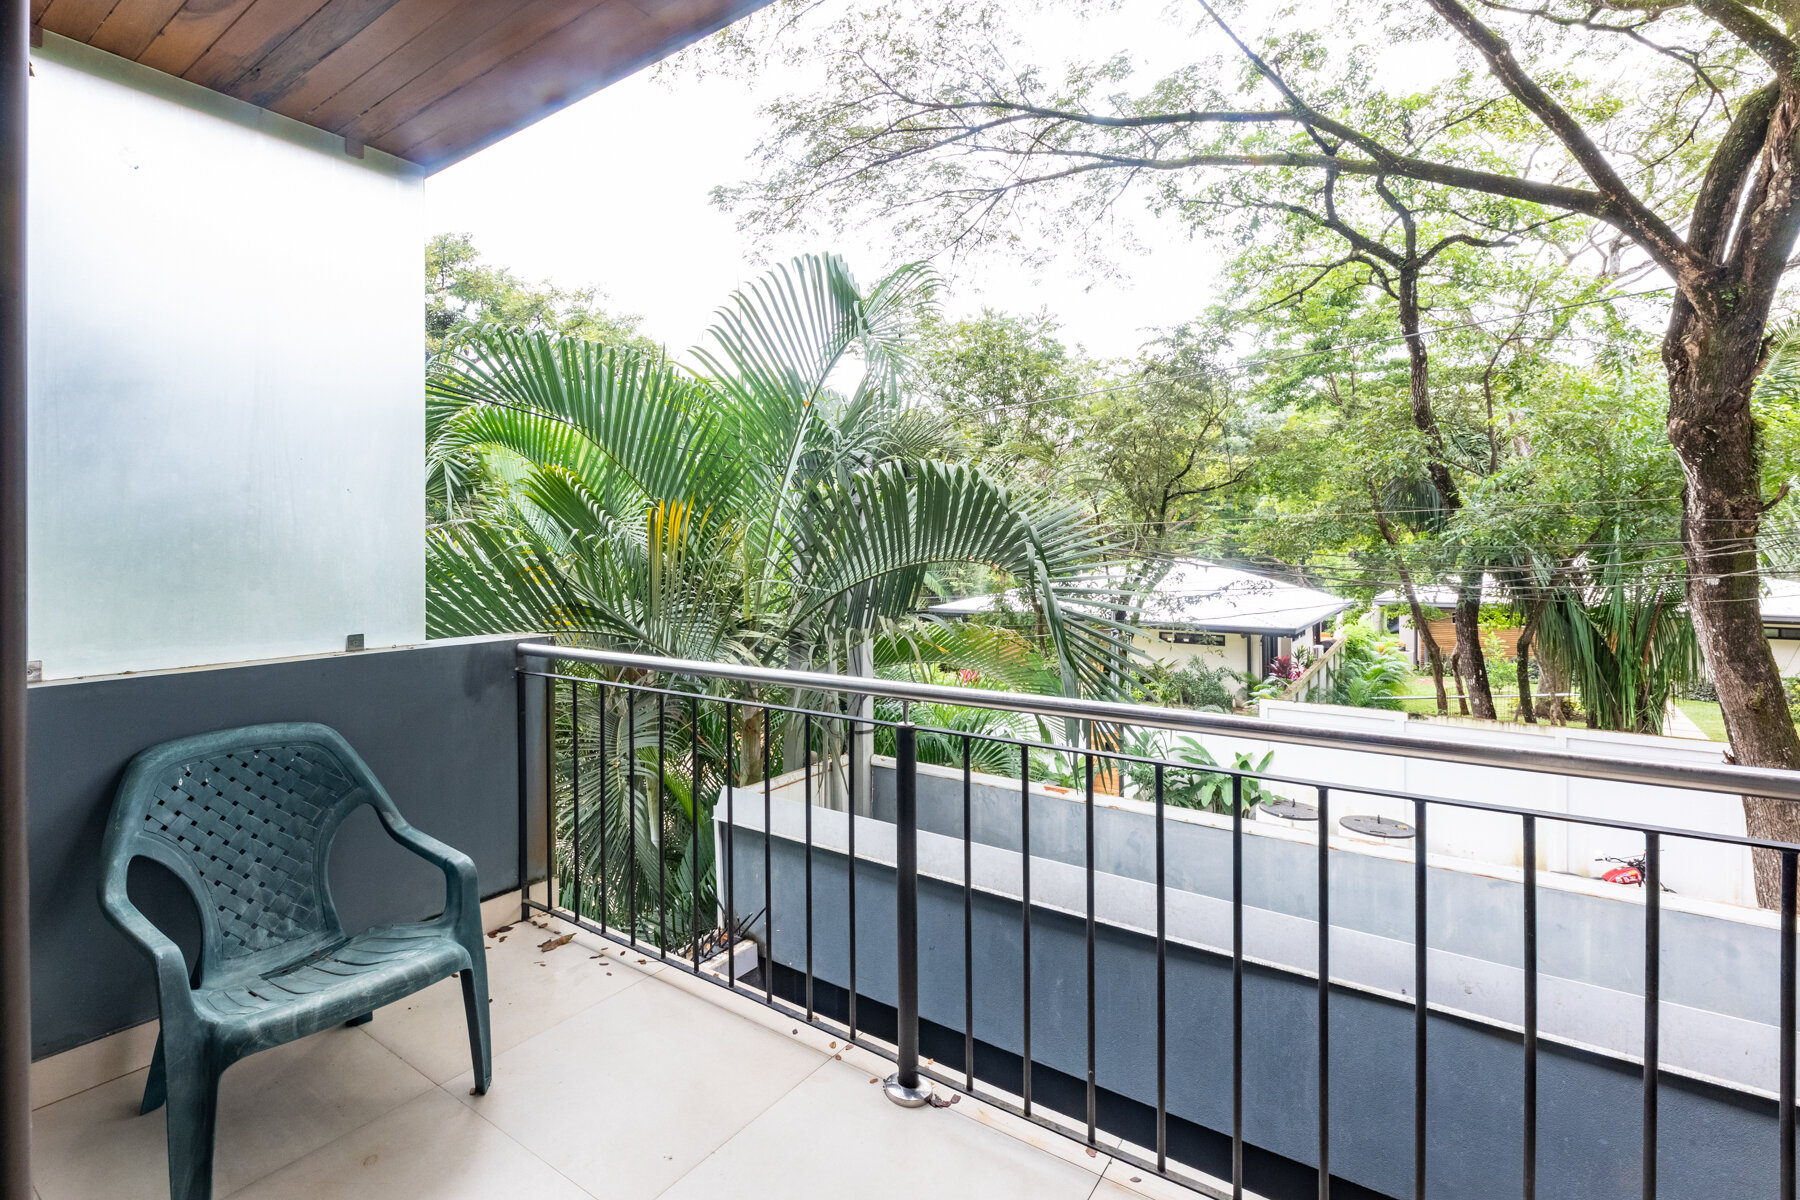 Casa-Artistica-Sothebys-Wanderlust-Realty-Real-Estate-Rentals-Nosara-Costa-Rica-27.jpg